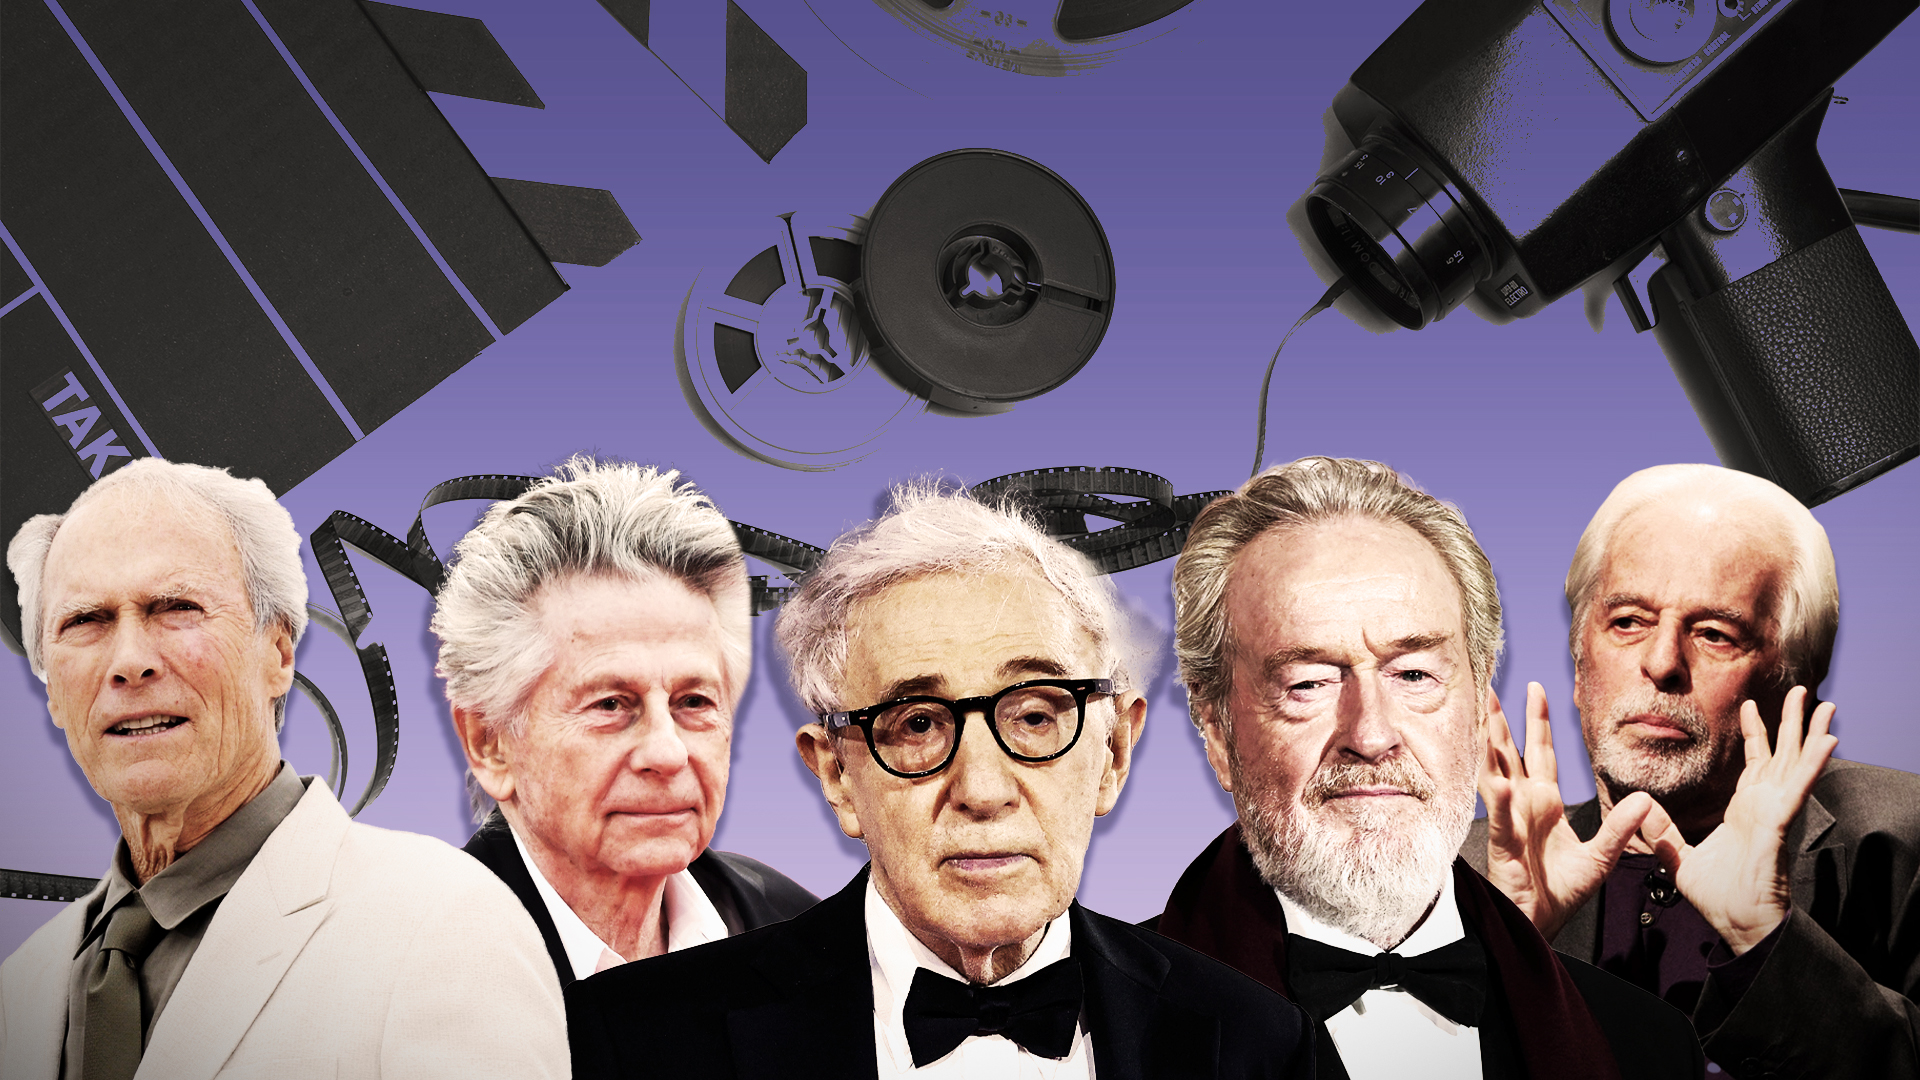 Dirigir una película con casi 100 años: estos son los directores más longevos de la industria del cine que continúan en activo